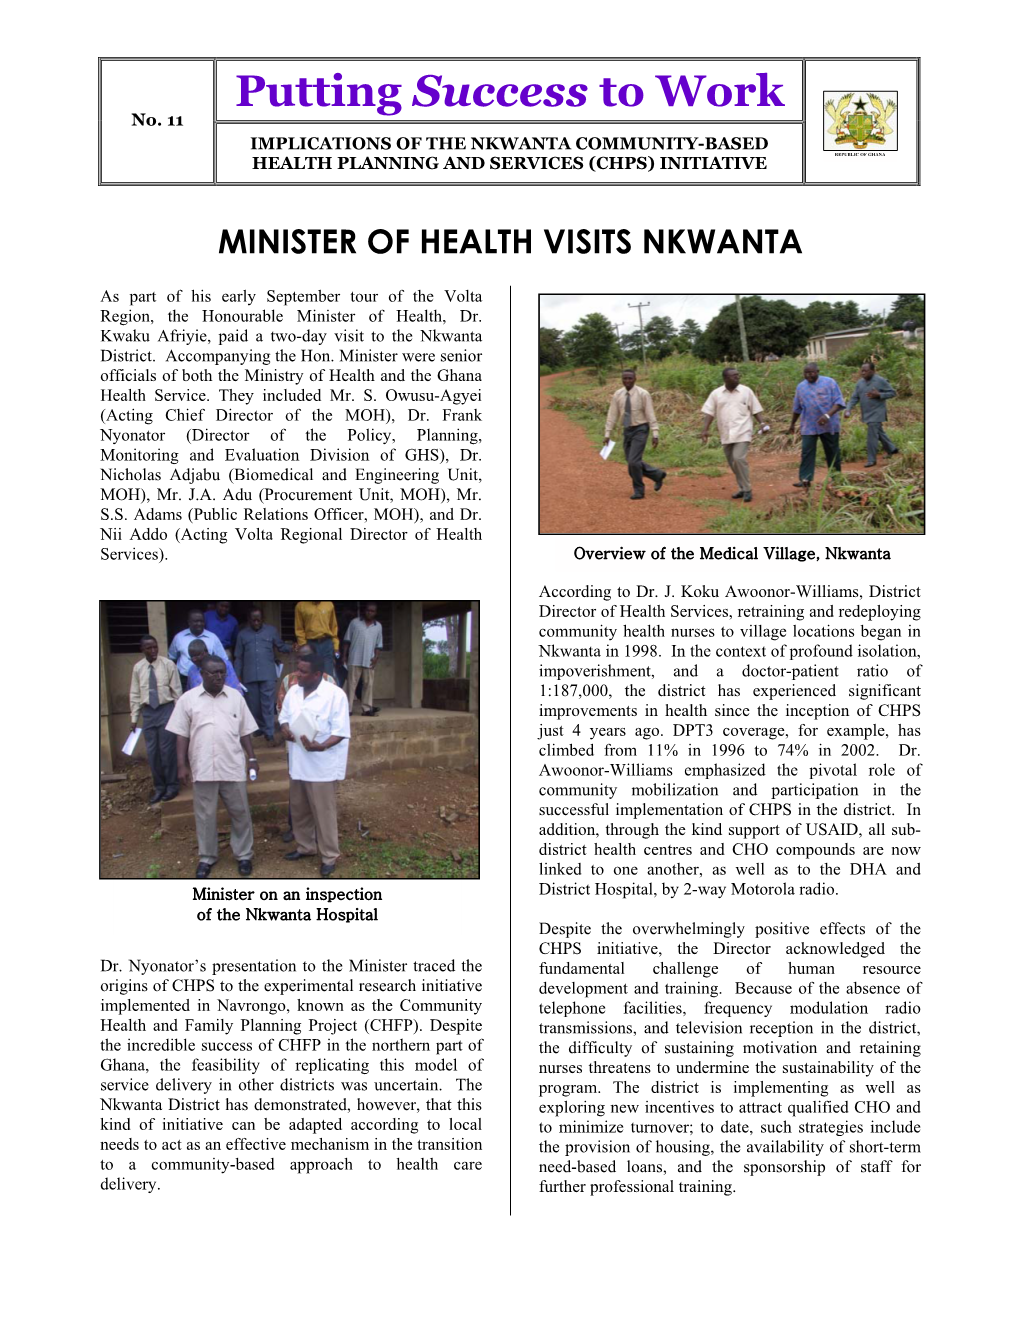 Minister of Health Visits Nkwanta